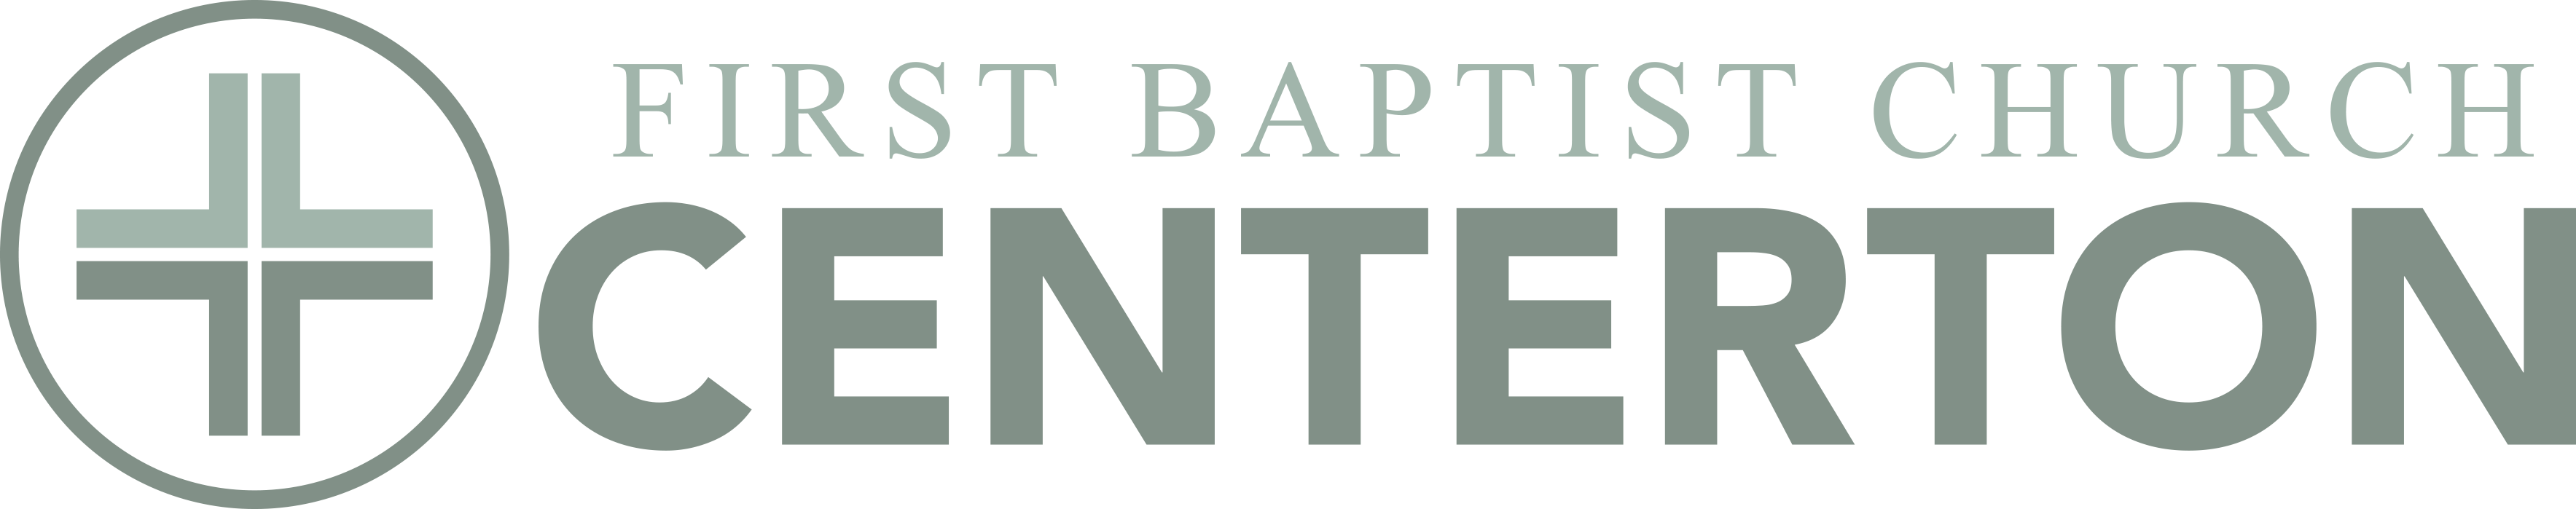 First Baptist Church Centerton